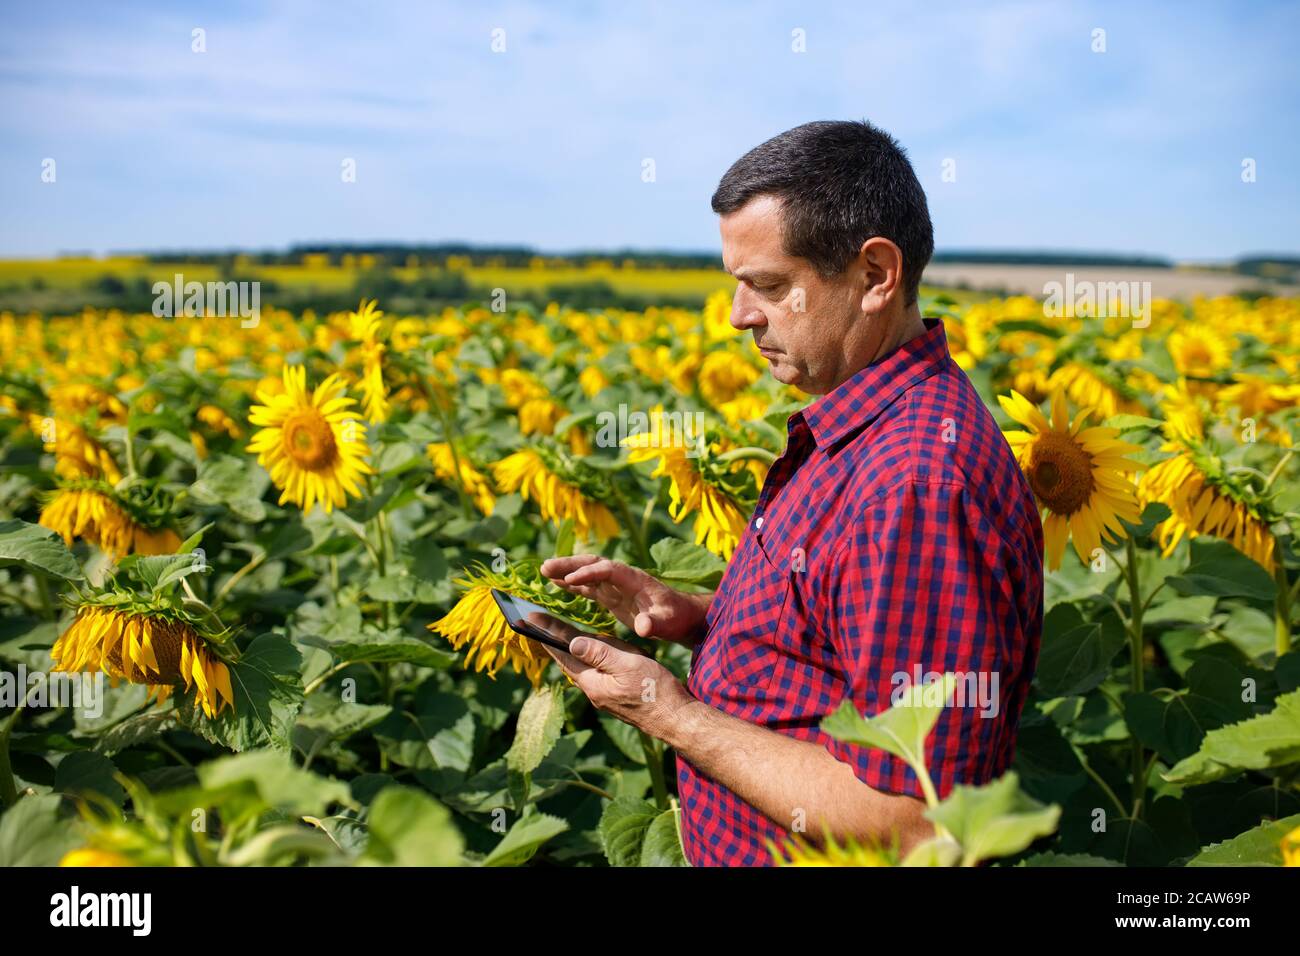 farmer in sunflower field Stock Photo